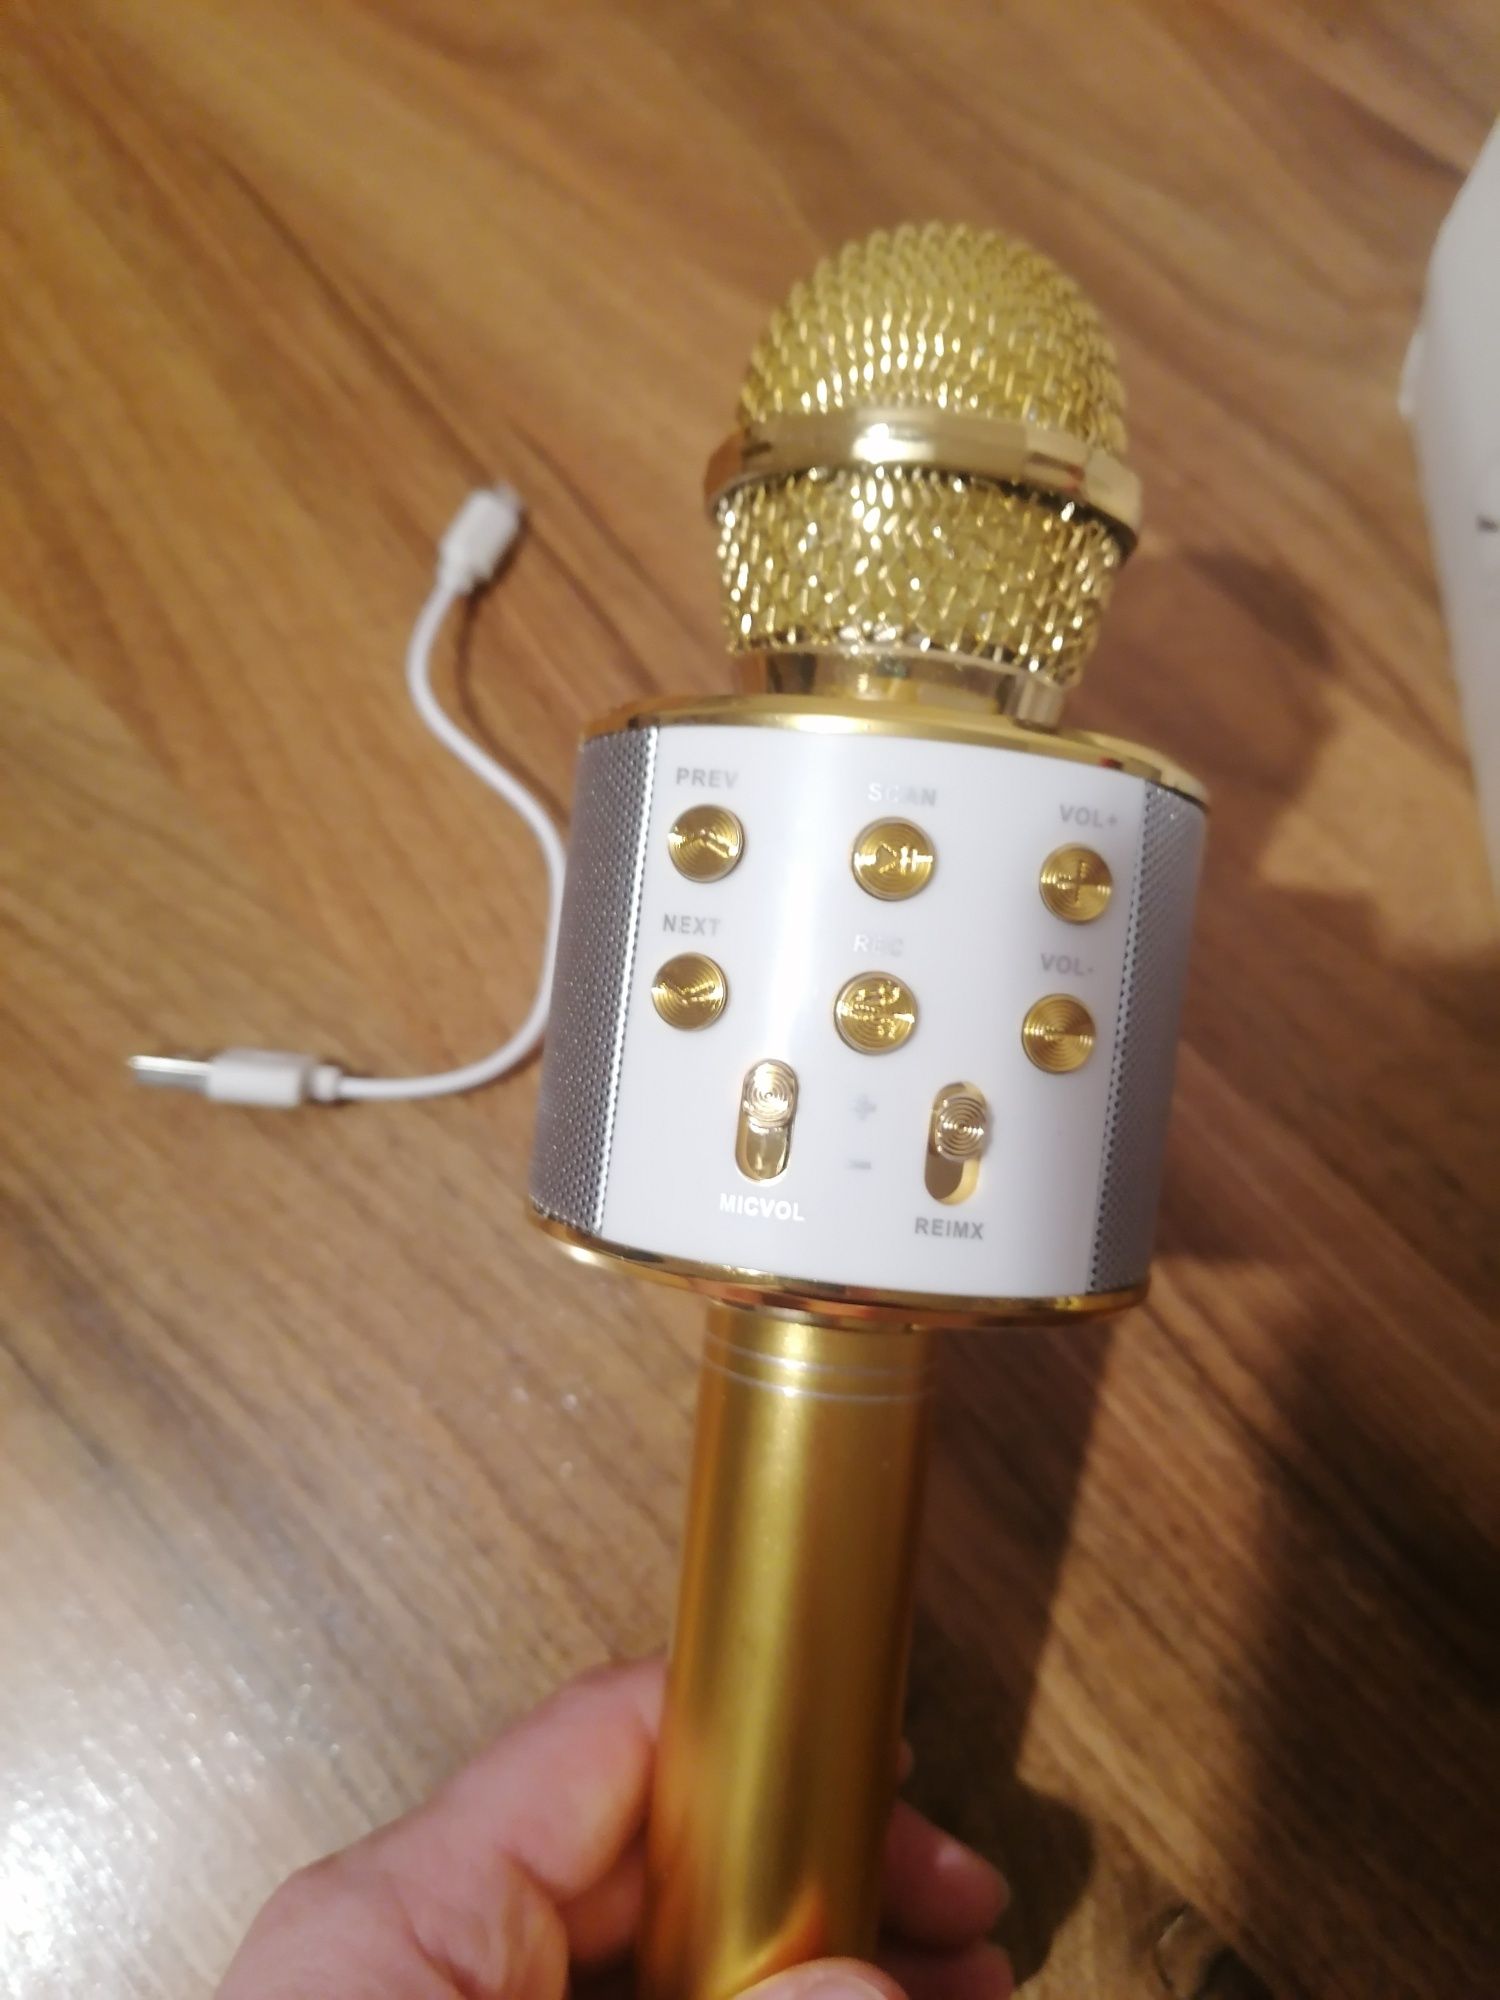 Mikrofon bezprzewodowy